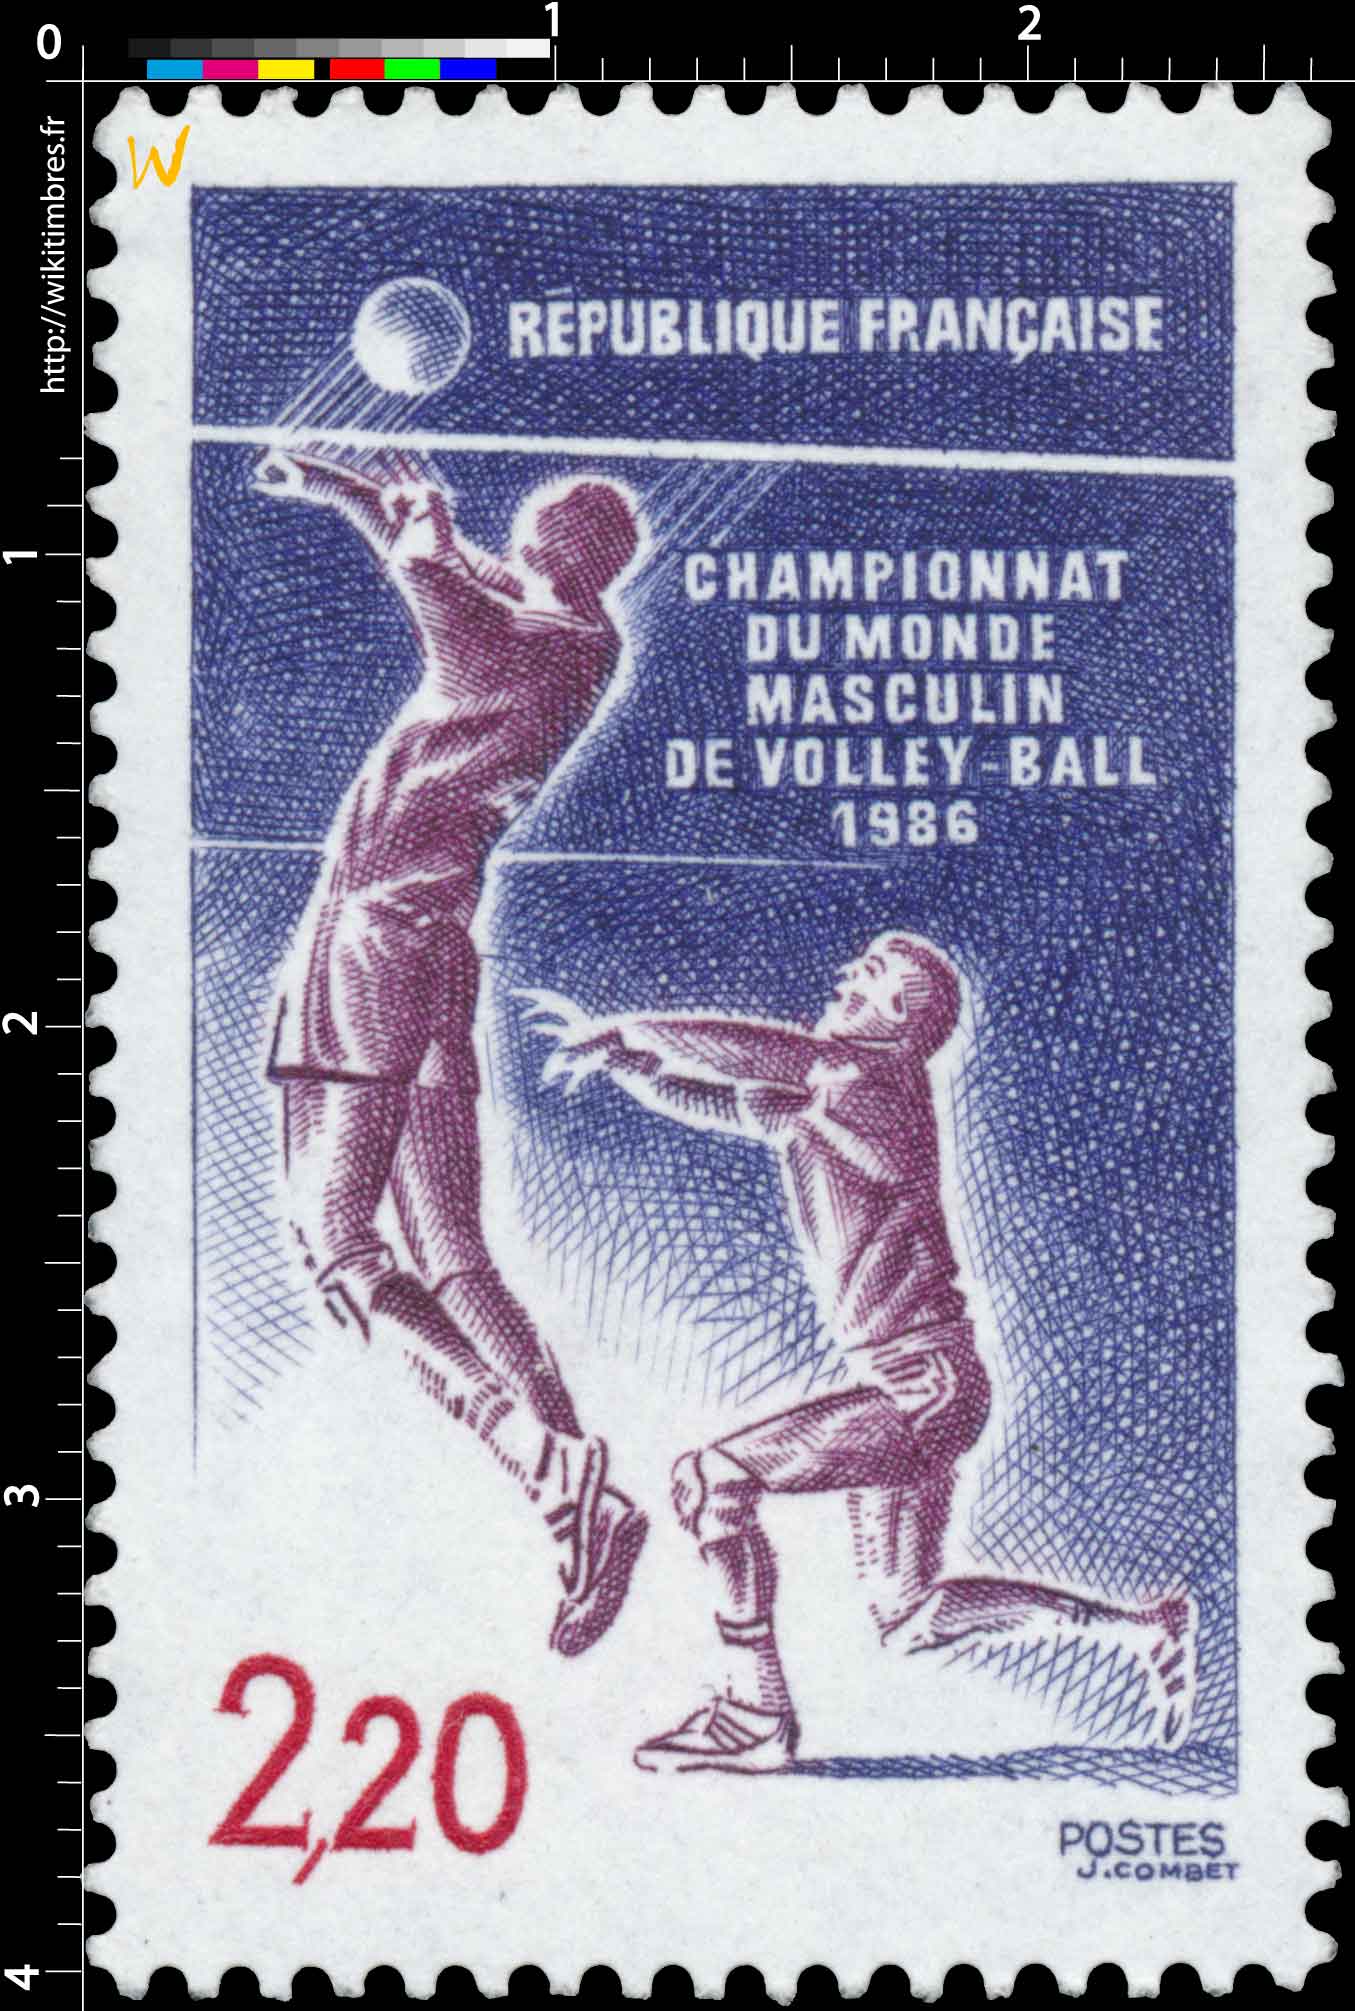 CHAMPIONNATS DU MONDE MASCULIN DE VOLLEY-BALL 1986